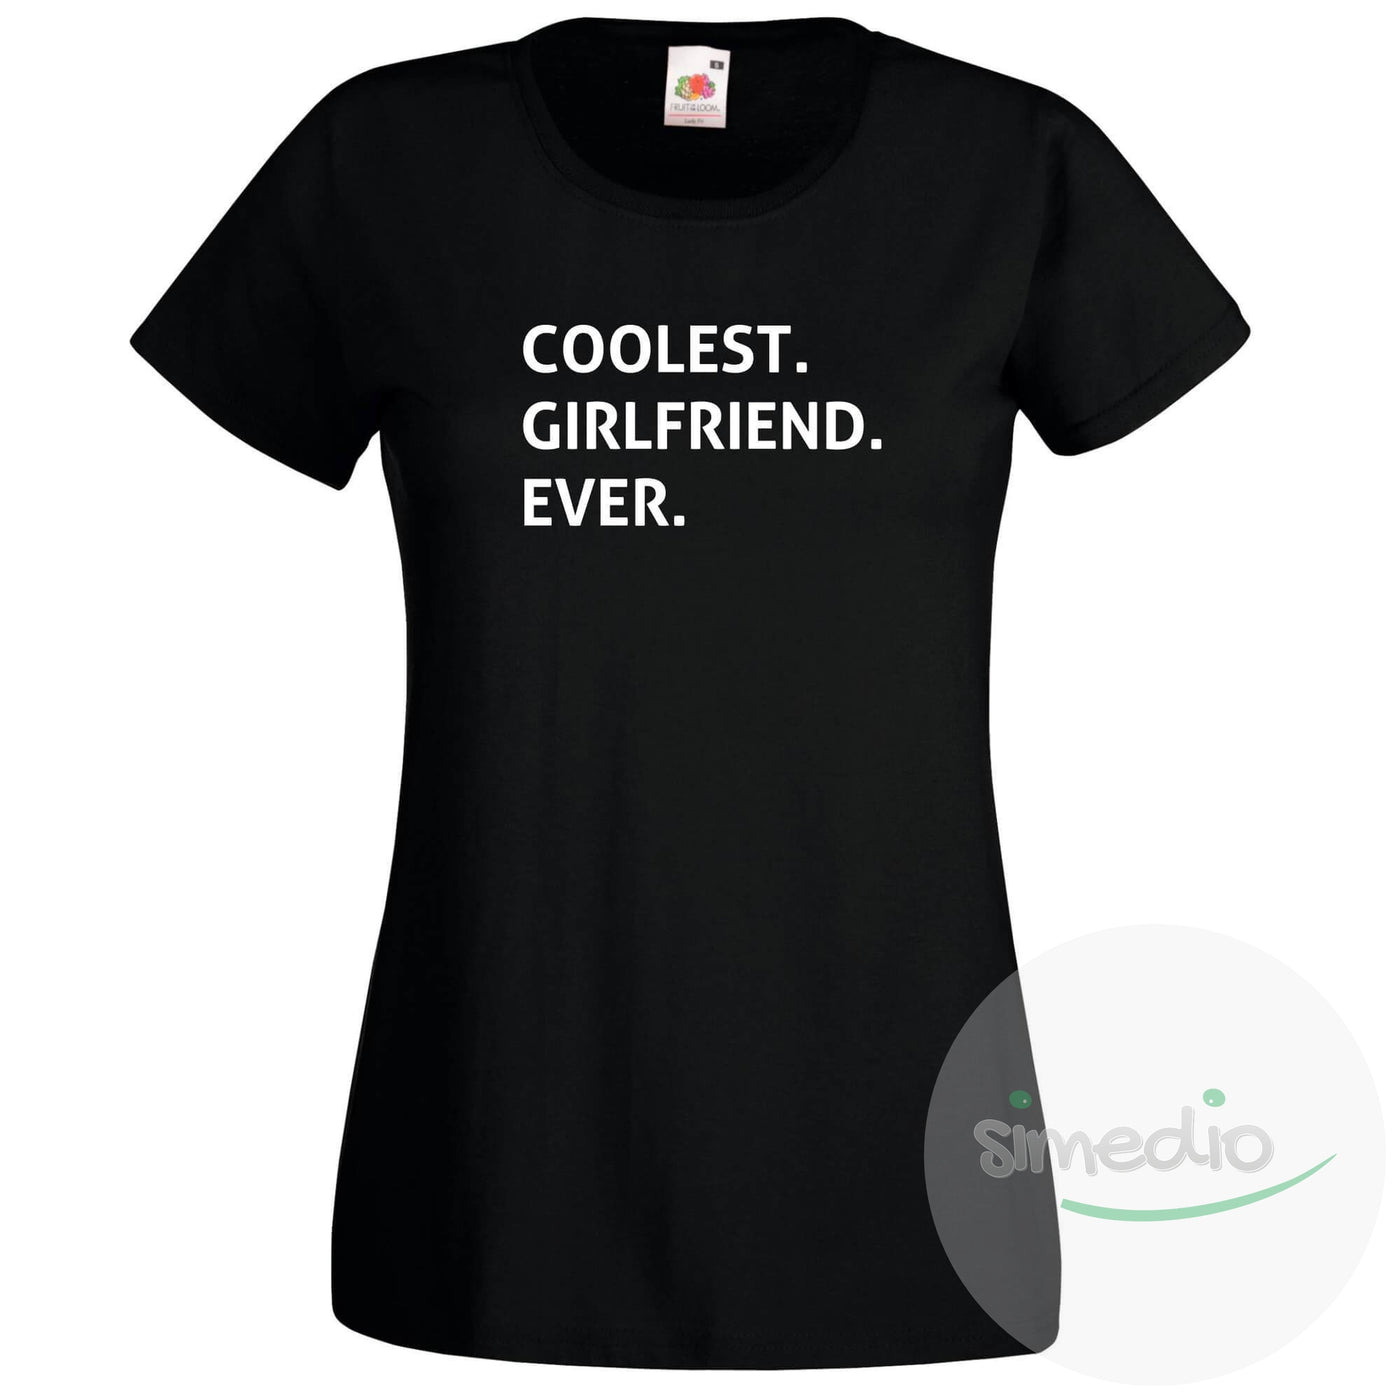 T-shirt original : COOLEST GIRLFRIEND EVER, Noir, S, - SiMEDIO